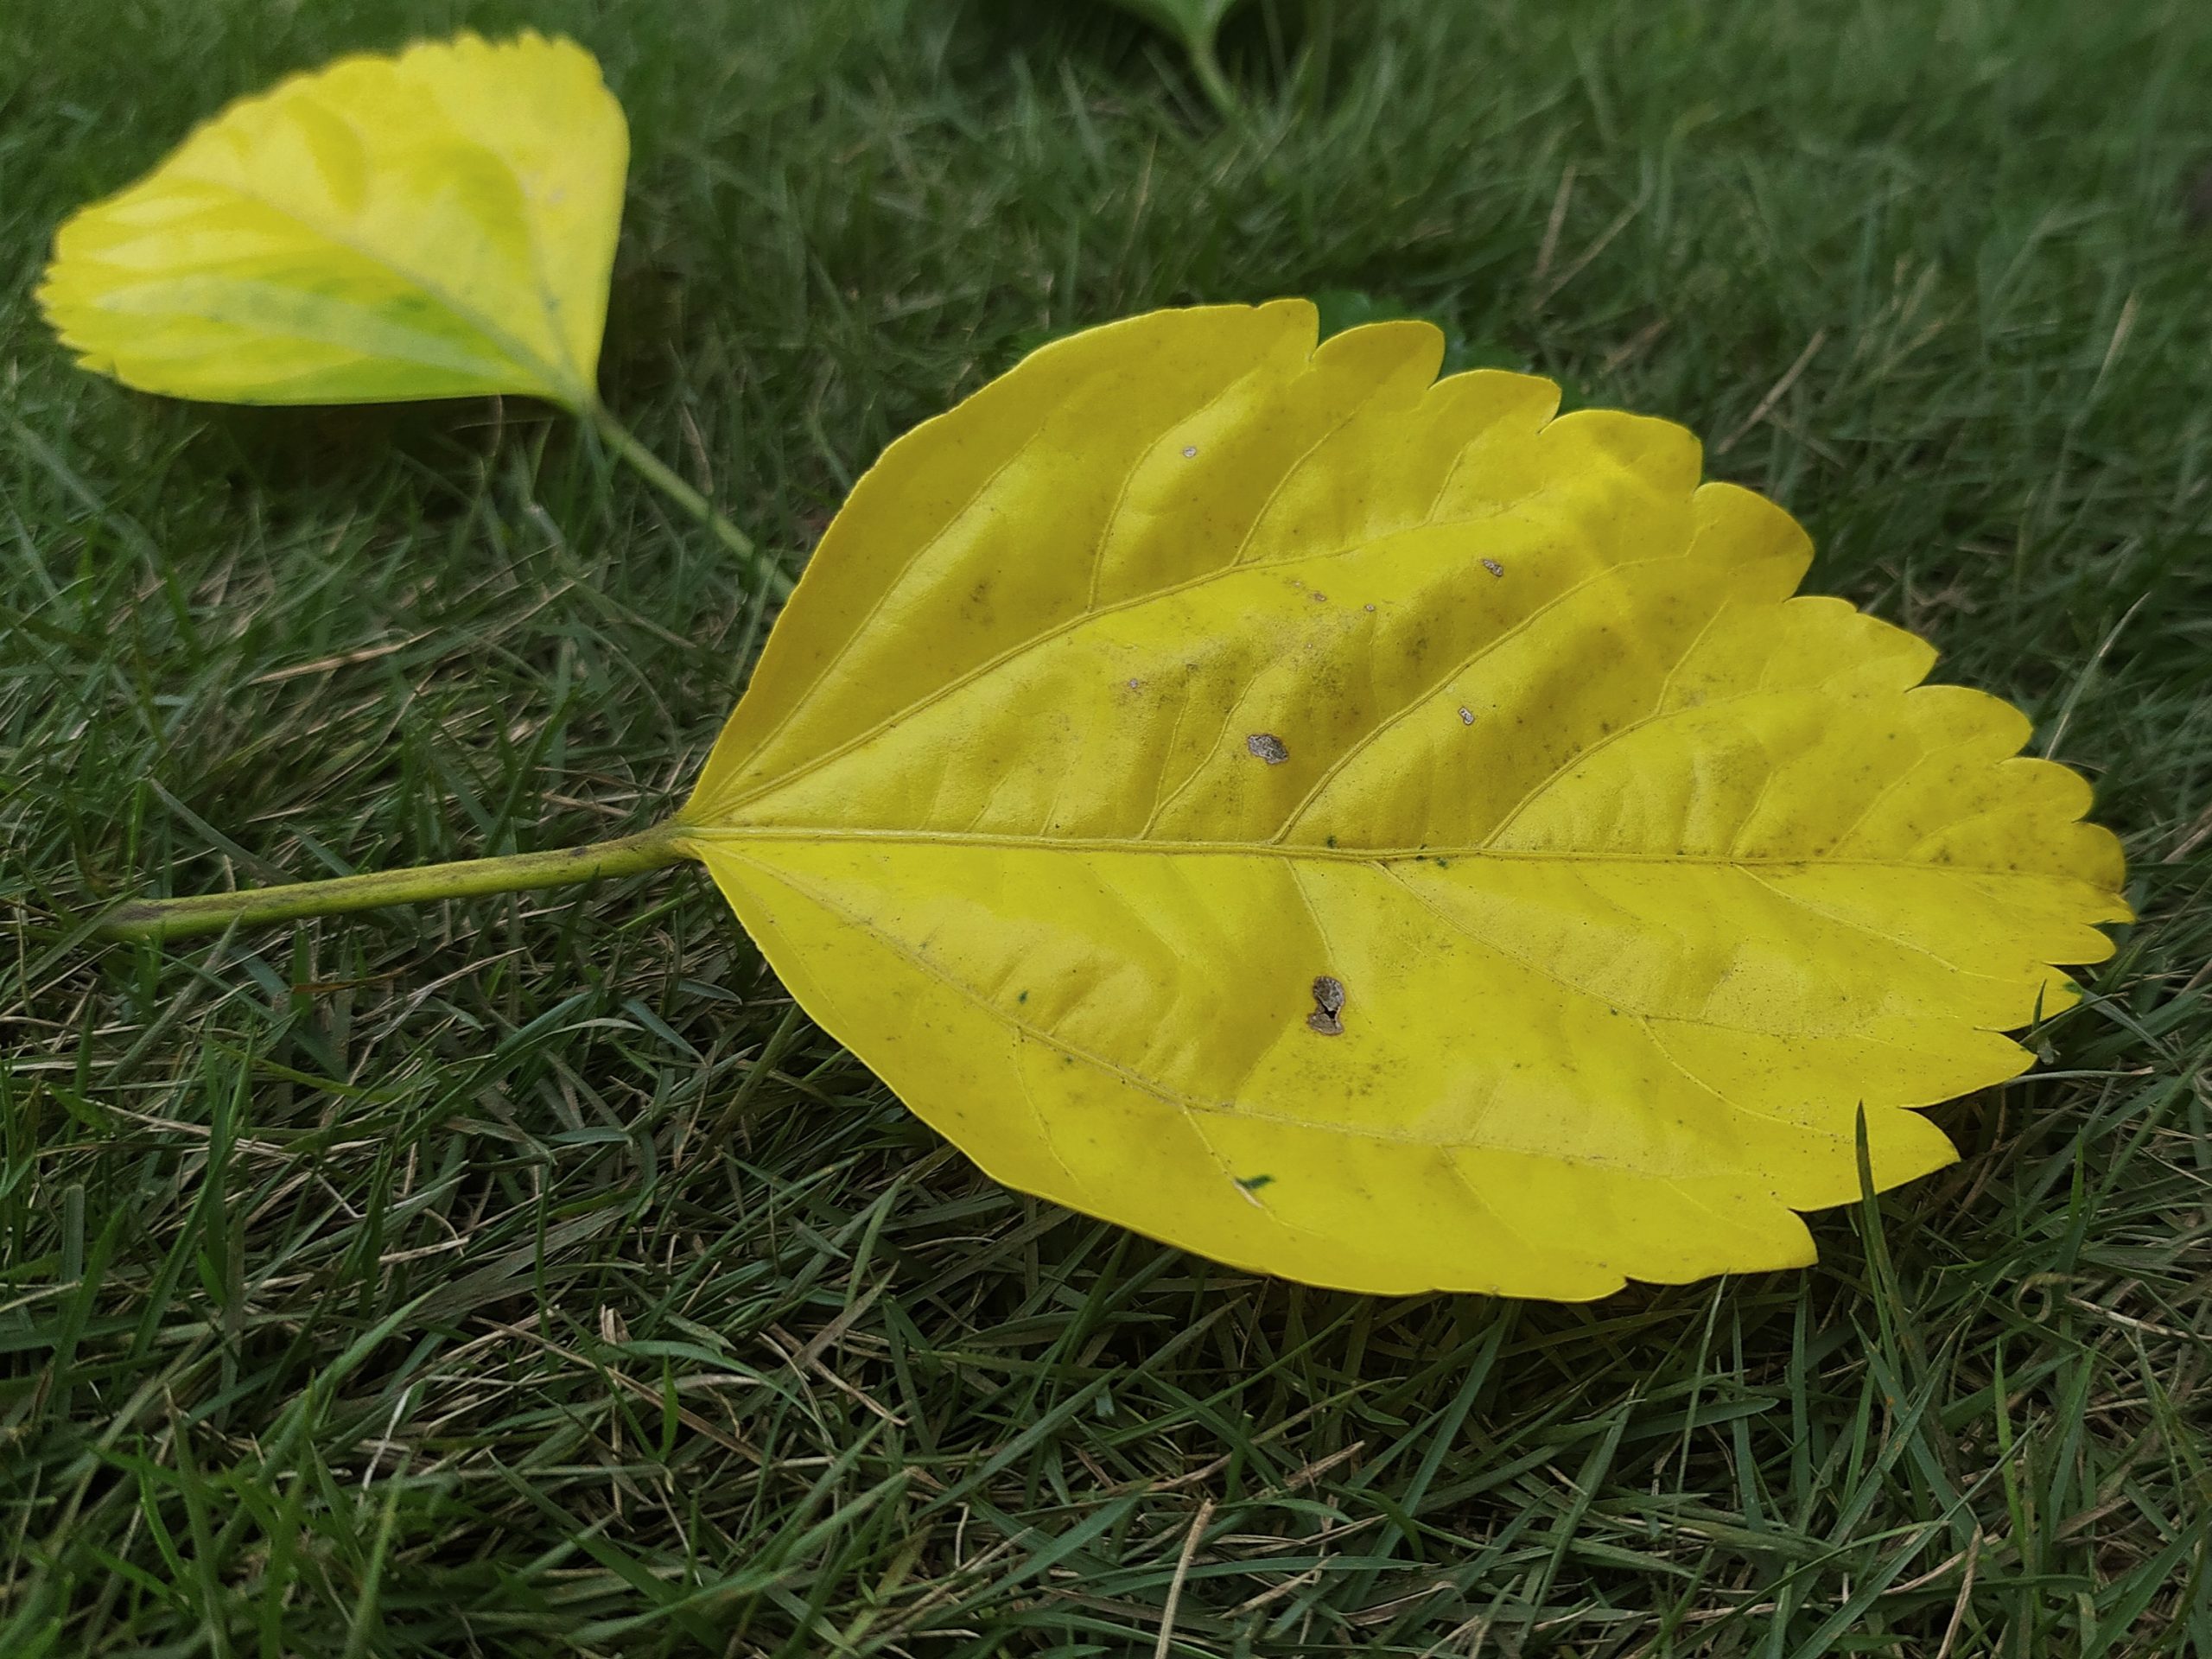 Fallen leaves on grass